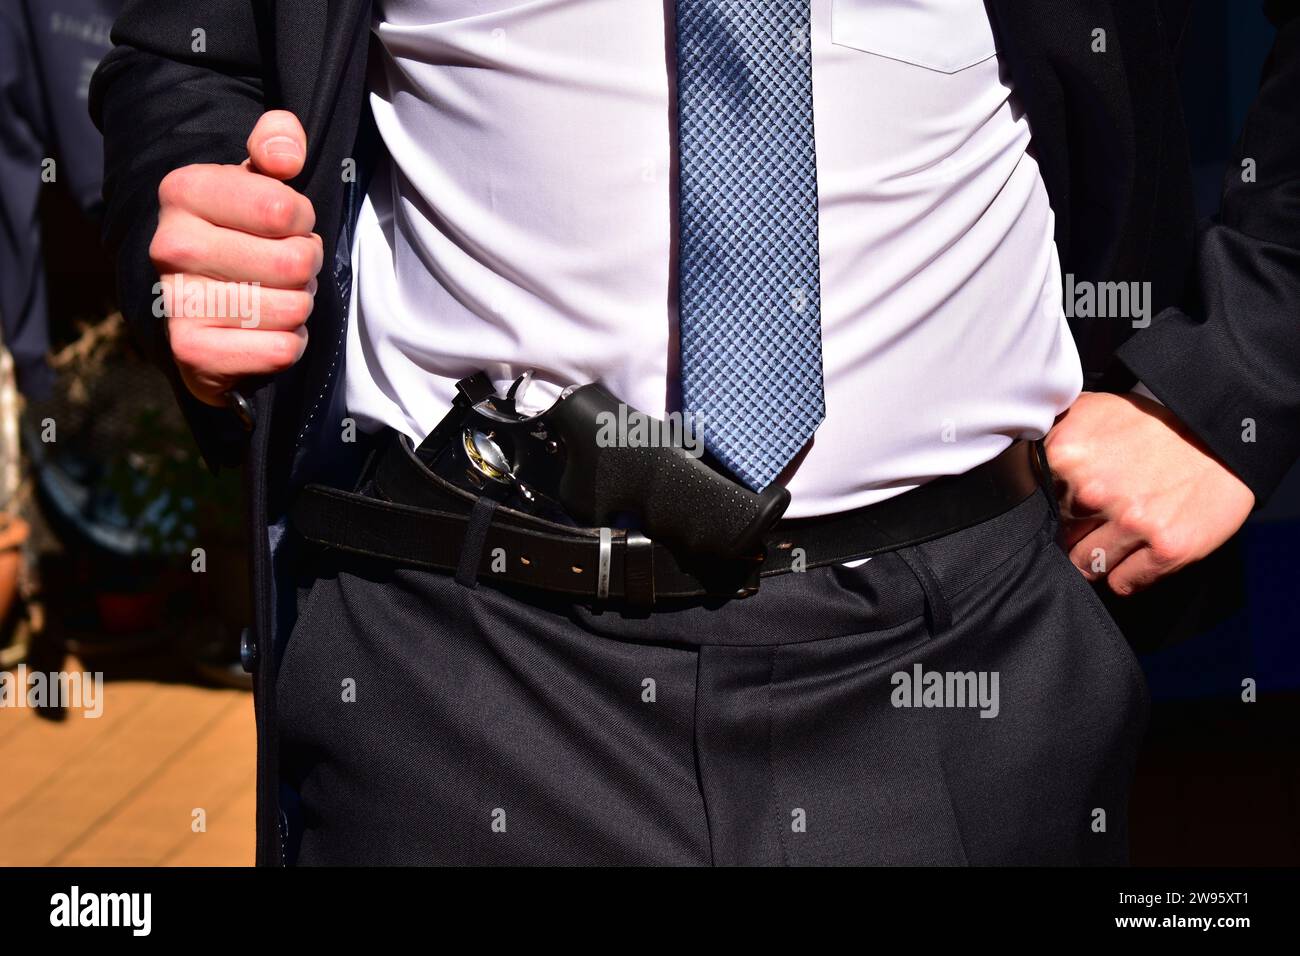 Uomo che indossa un completo vestito nero, una camicia bianca e una cravatta azzurra che mostra il revolver cromato nascosto sotto la cintura Foto Stock